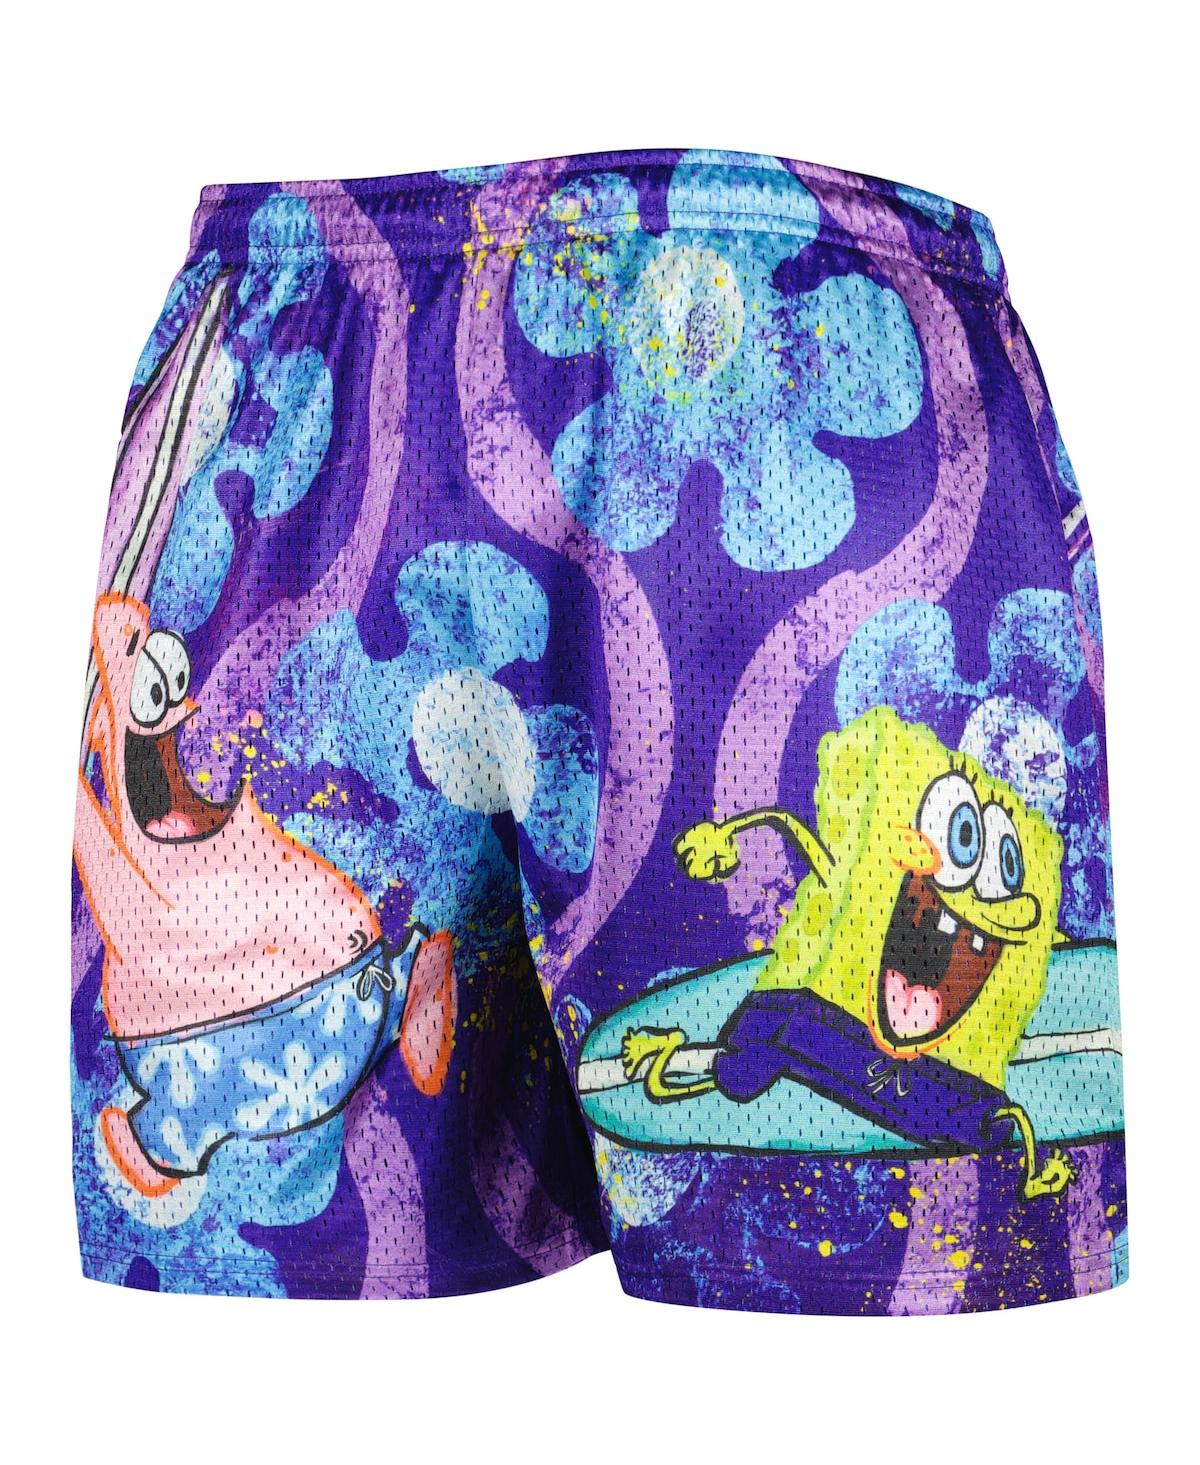 Shop Chalk Line Men's  Purple Spongebob Squarepants Shorts